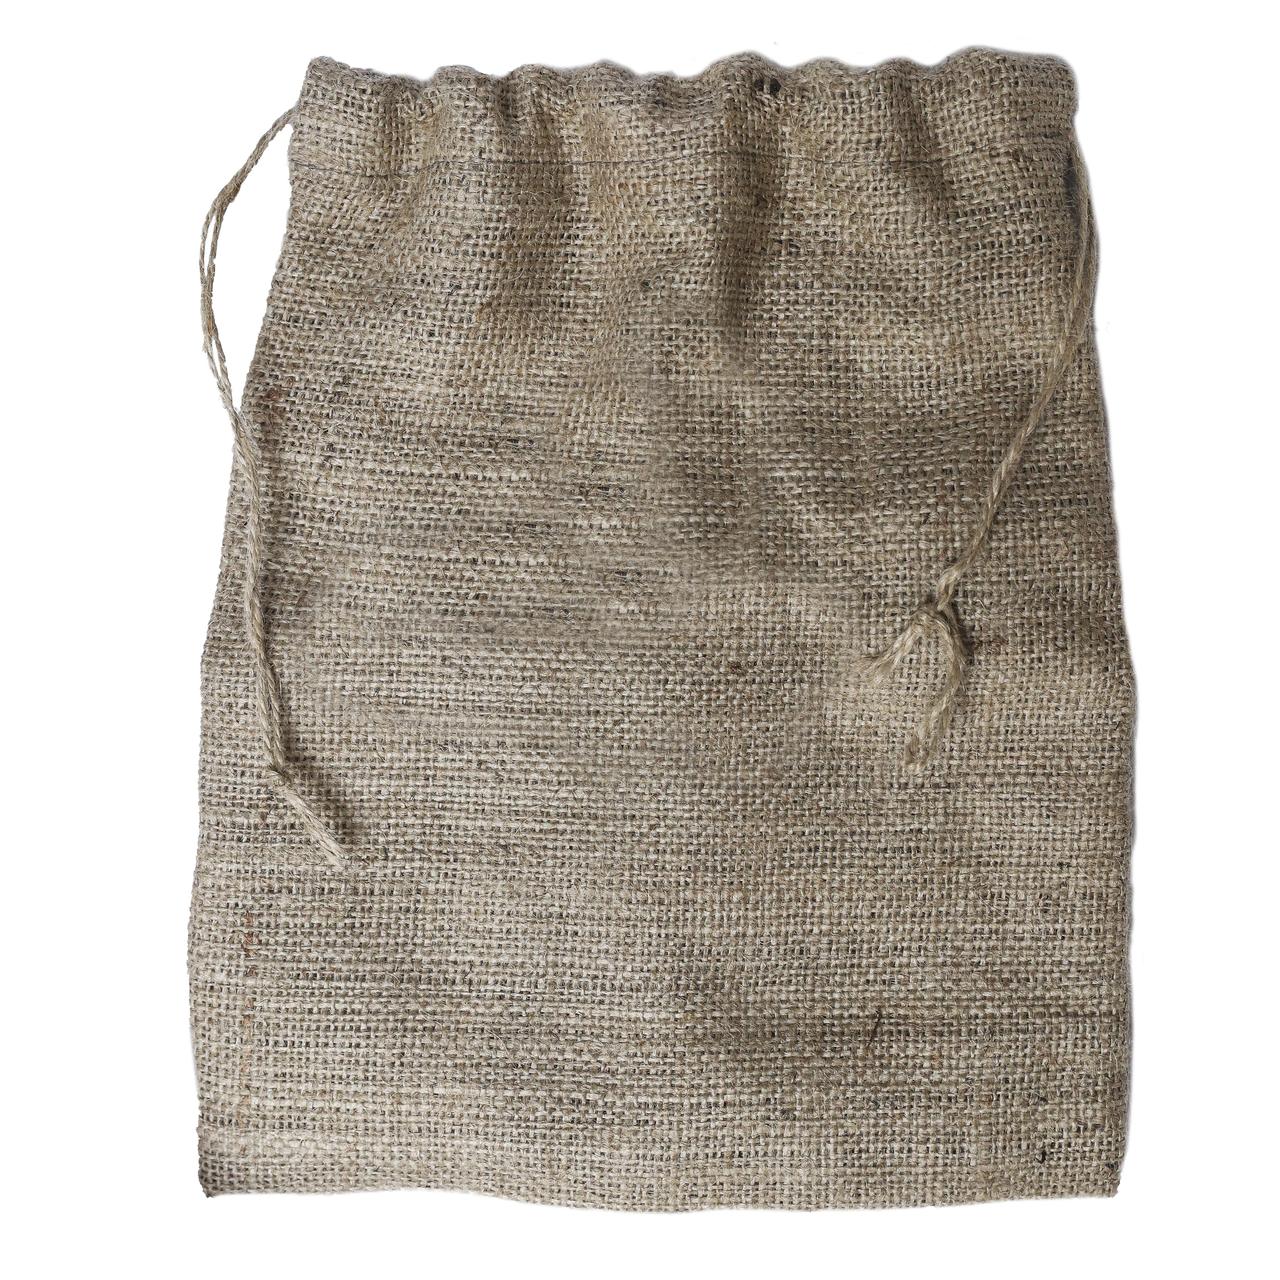 Мешочек декоративный из натуральной мешковины VS Thermal Eco Bag Бежевый